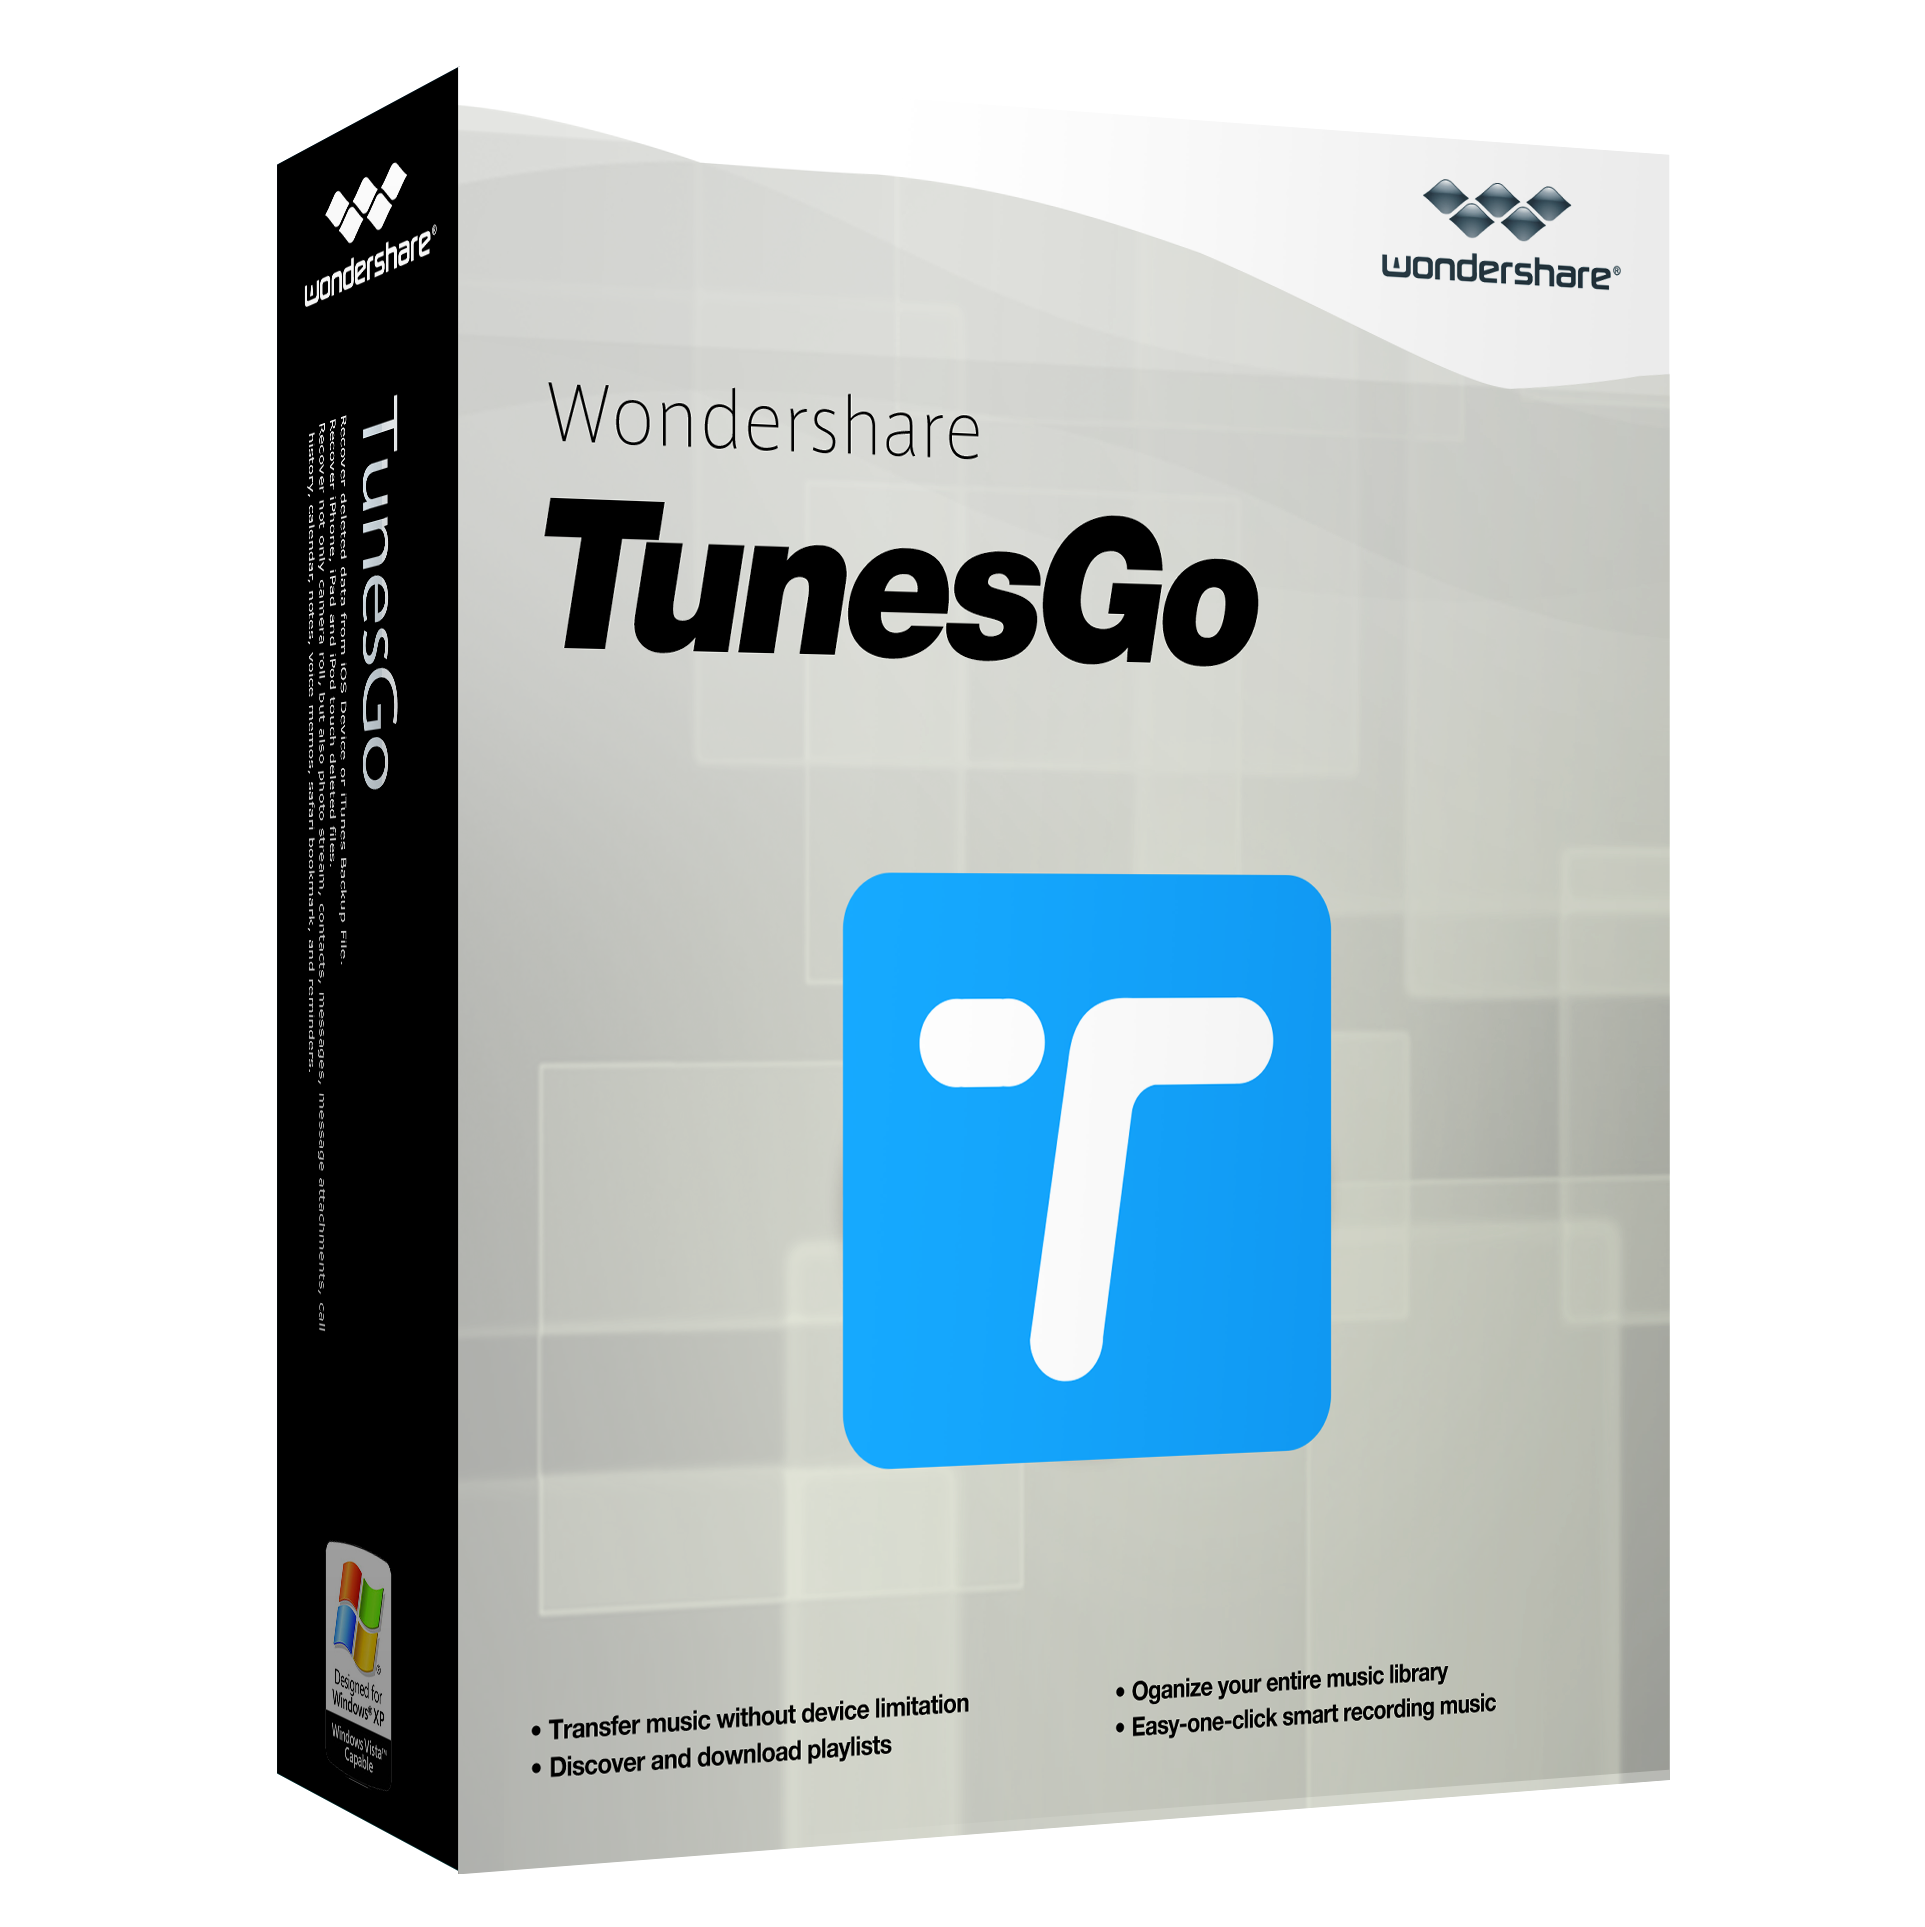 Wondershare TunesGo new